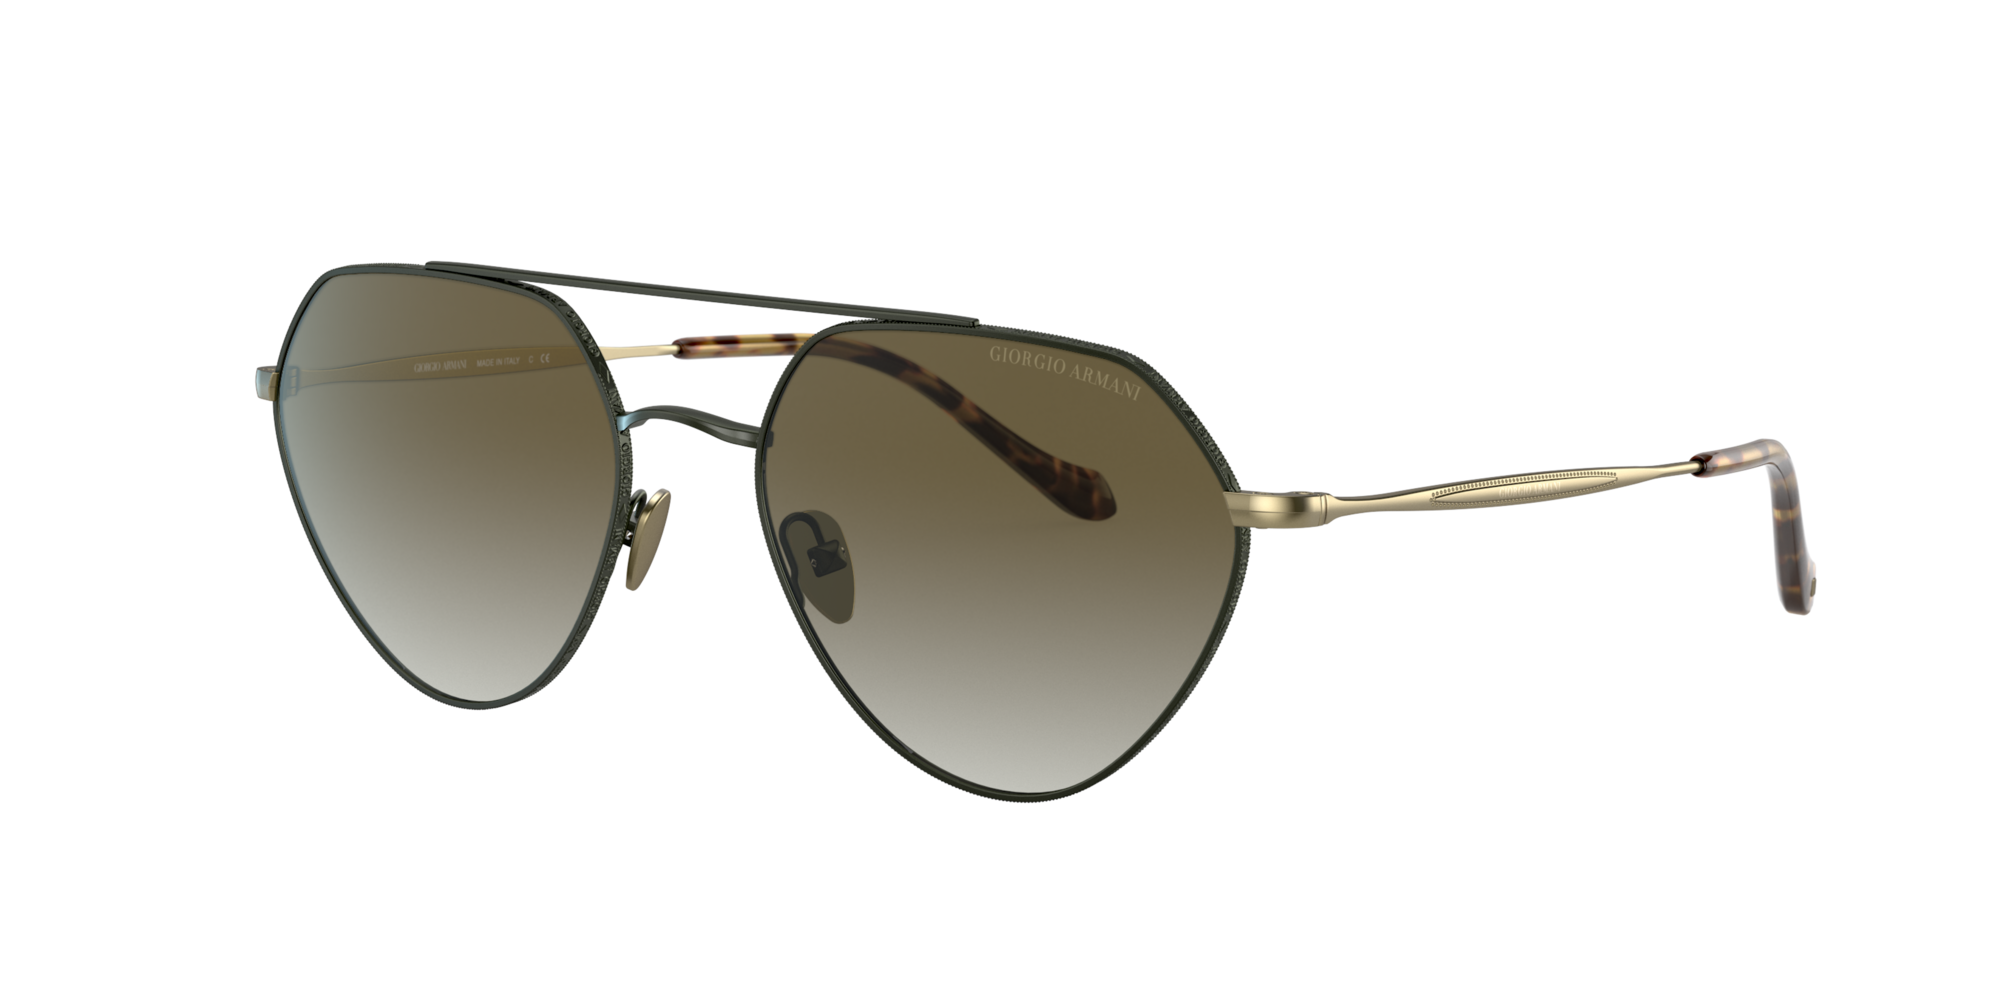 Consulte nosso catálogo de Óculos de Sol Giorgio Armani Eyewear com diversos modelos e preços para sua escolha.